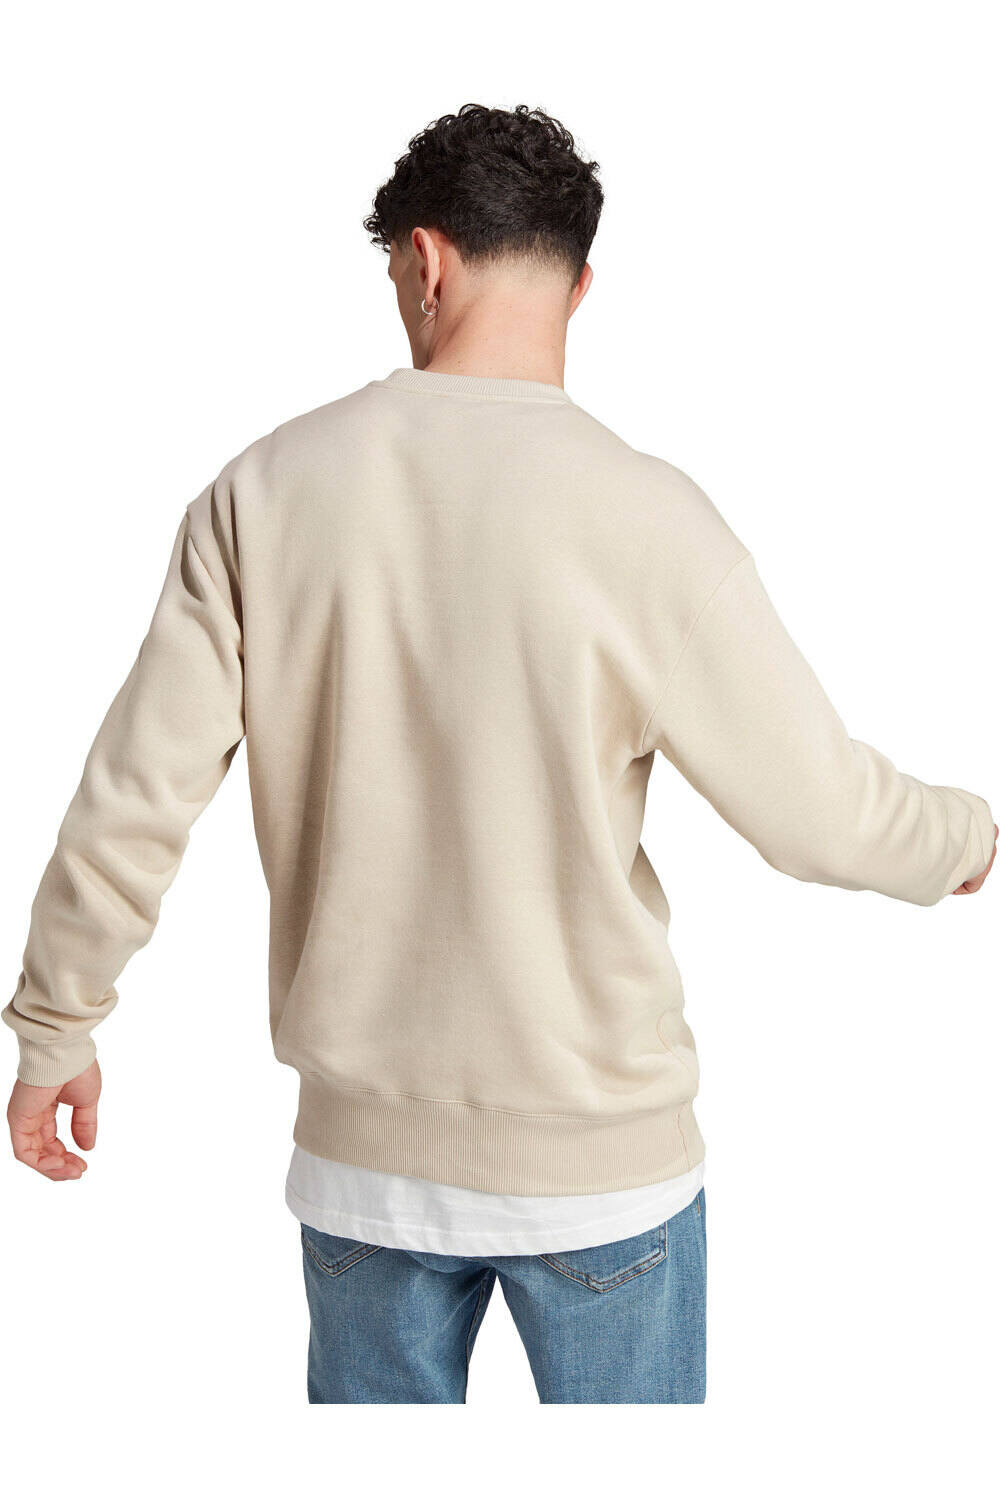 Comprar en oferta Adidas All SZN Fleece Sweatshirt wonder beige (IP8351)